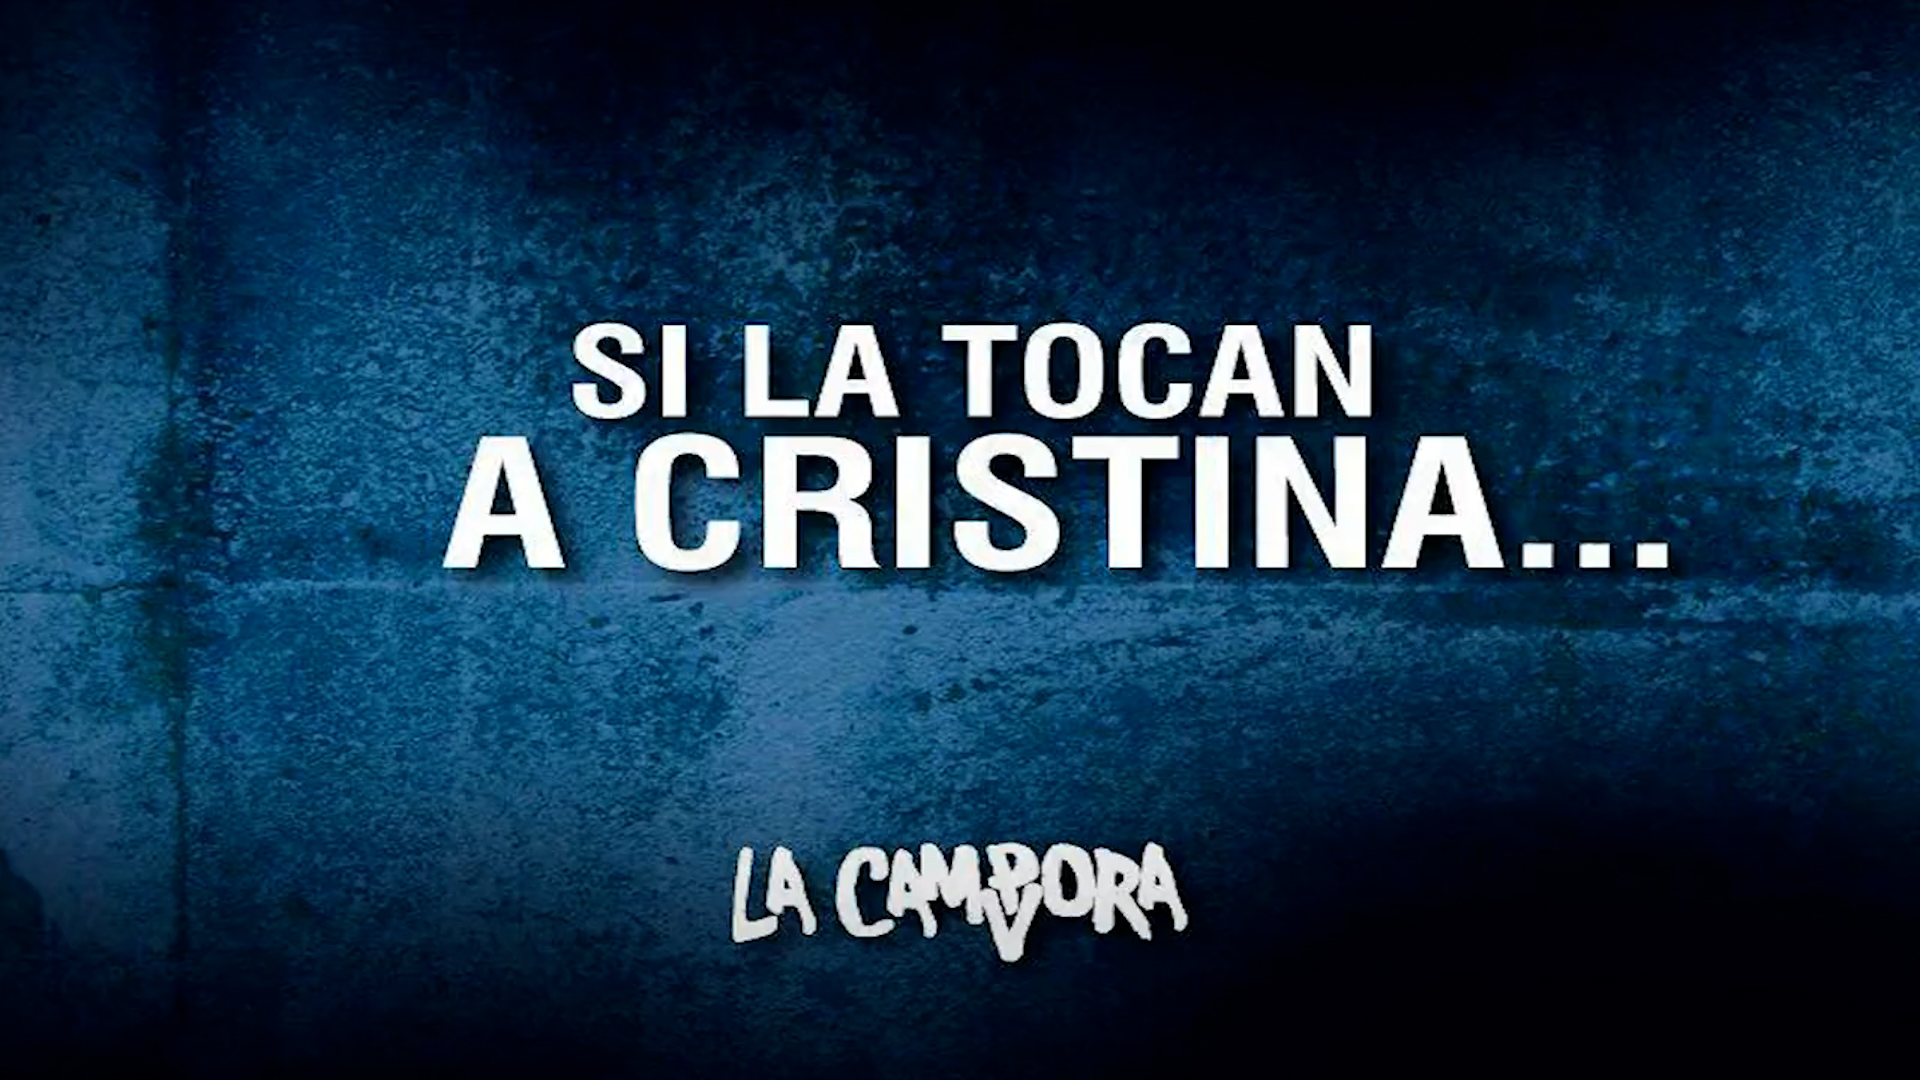 El mensaje de La Cámpora en apoyo a la vicepresidenta Cristina Kirchner, luego de la segunda jornada de alegatos por la causa Vialidad